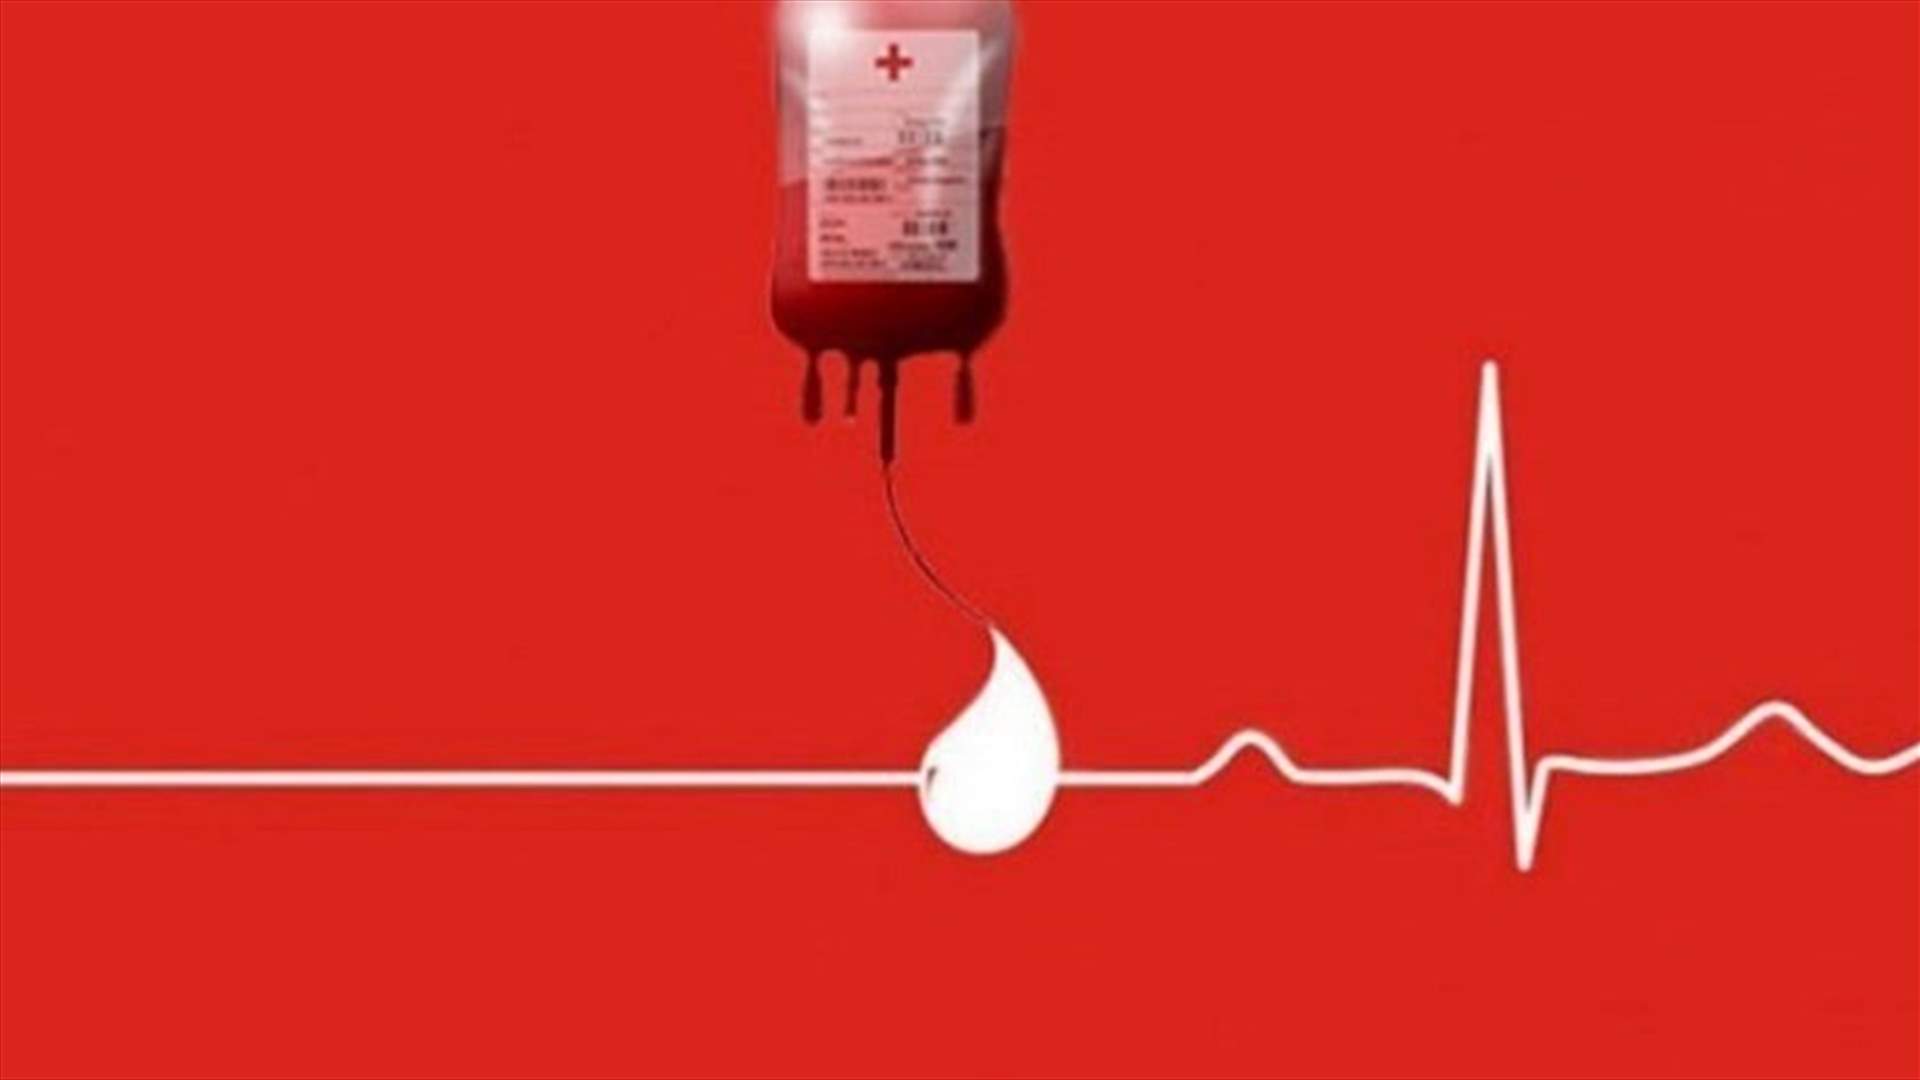 مريضة في مستشفى مار يوسف - الدورة بحاجة إلى ثلاث وحدات دم من فئة A-... للتبرع، الإتصال على: 03357410